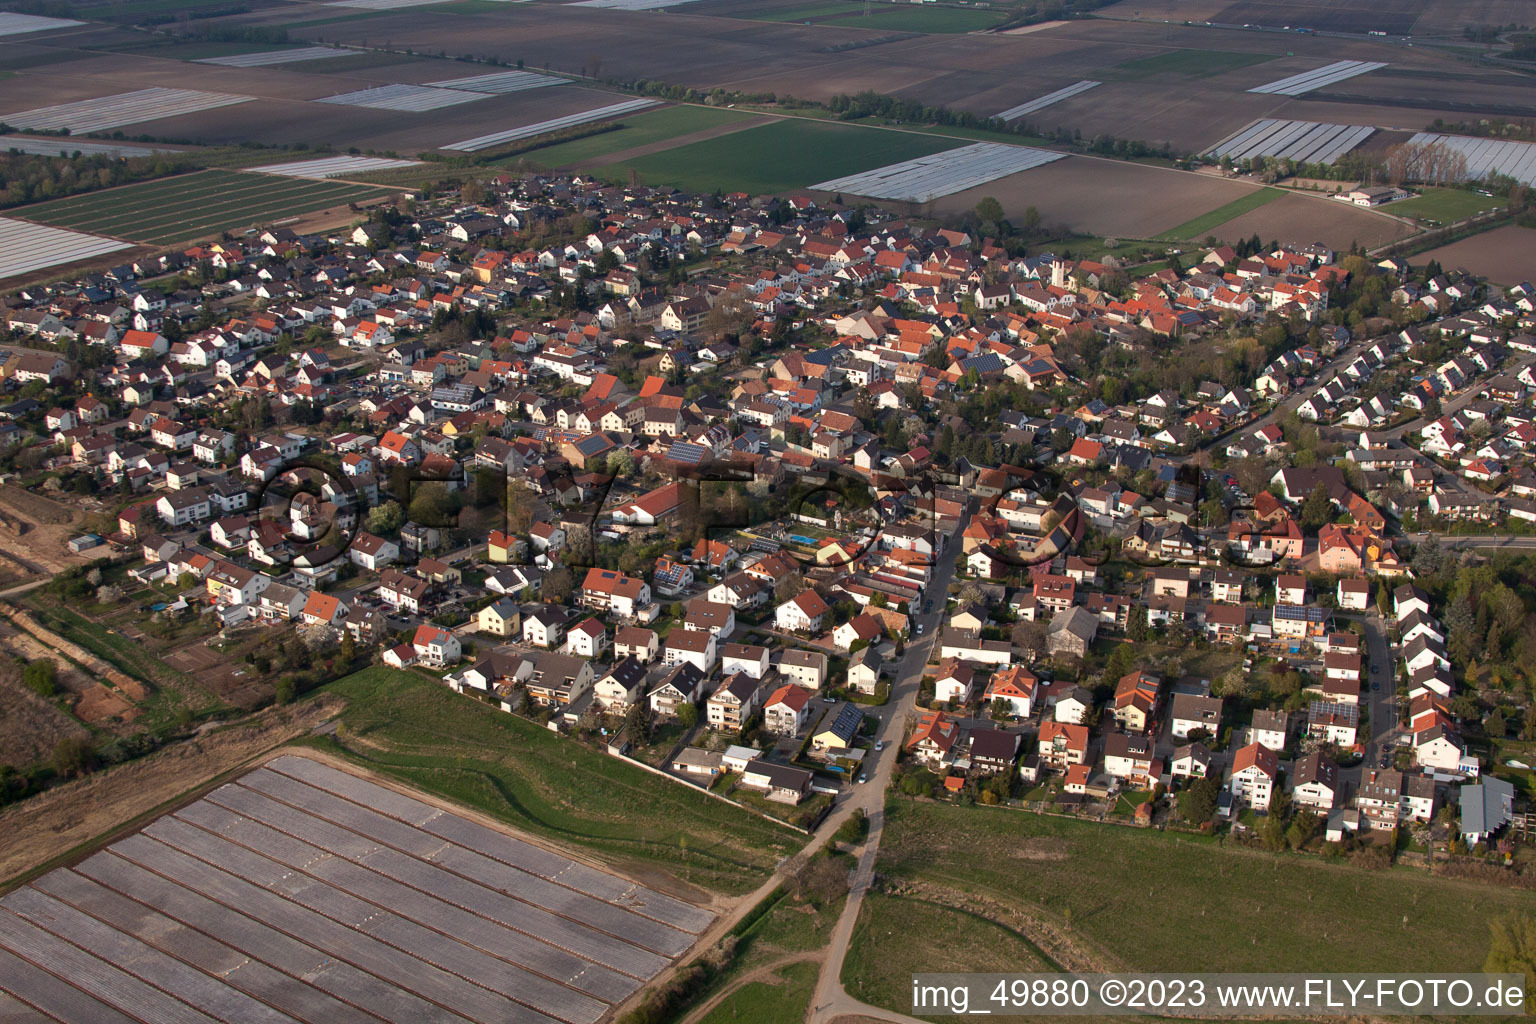 District Schauernheim in Dannstadt-Schauernheim in the state Rhineland-Palatinate, Germany from the plane